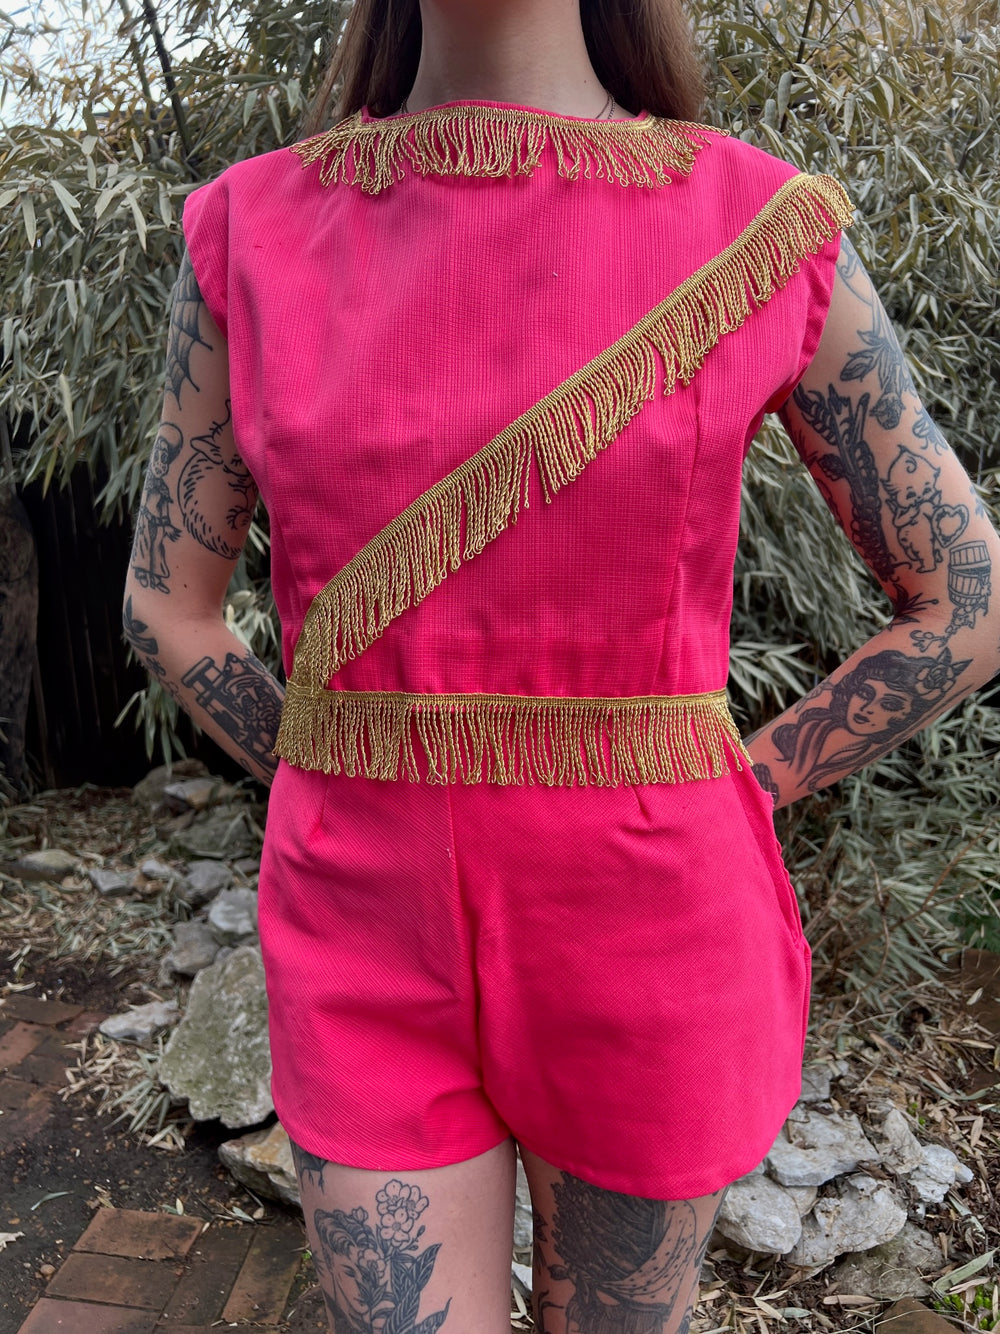 60s Pink Majorette Uniform with Gold Fringe